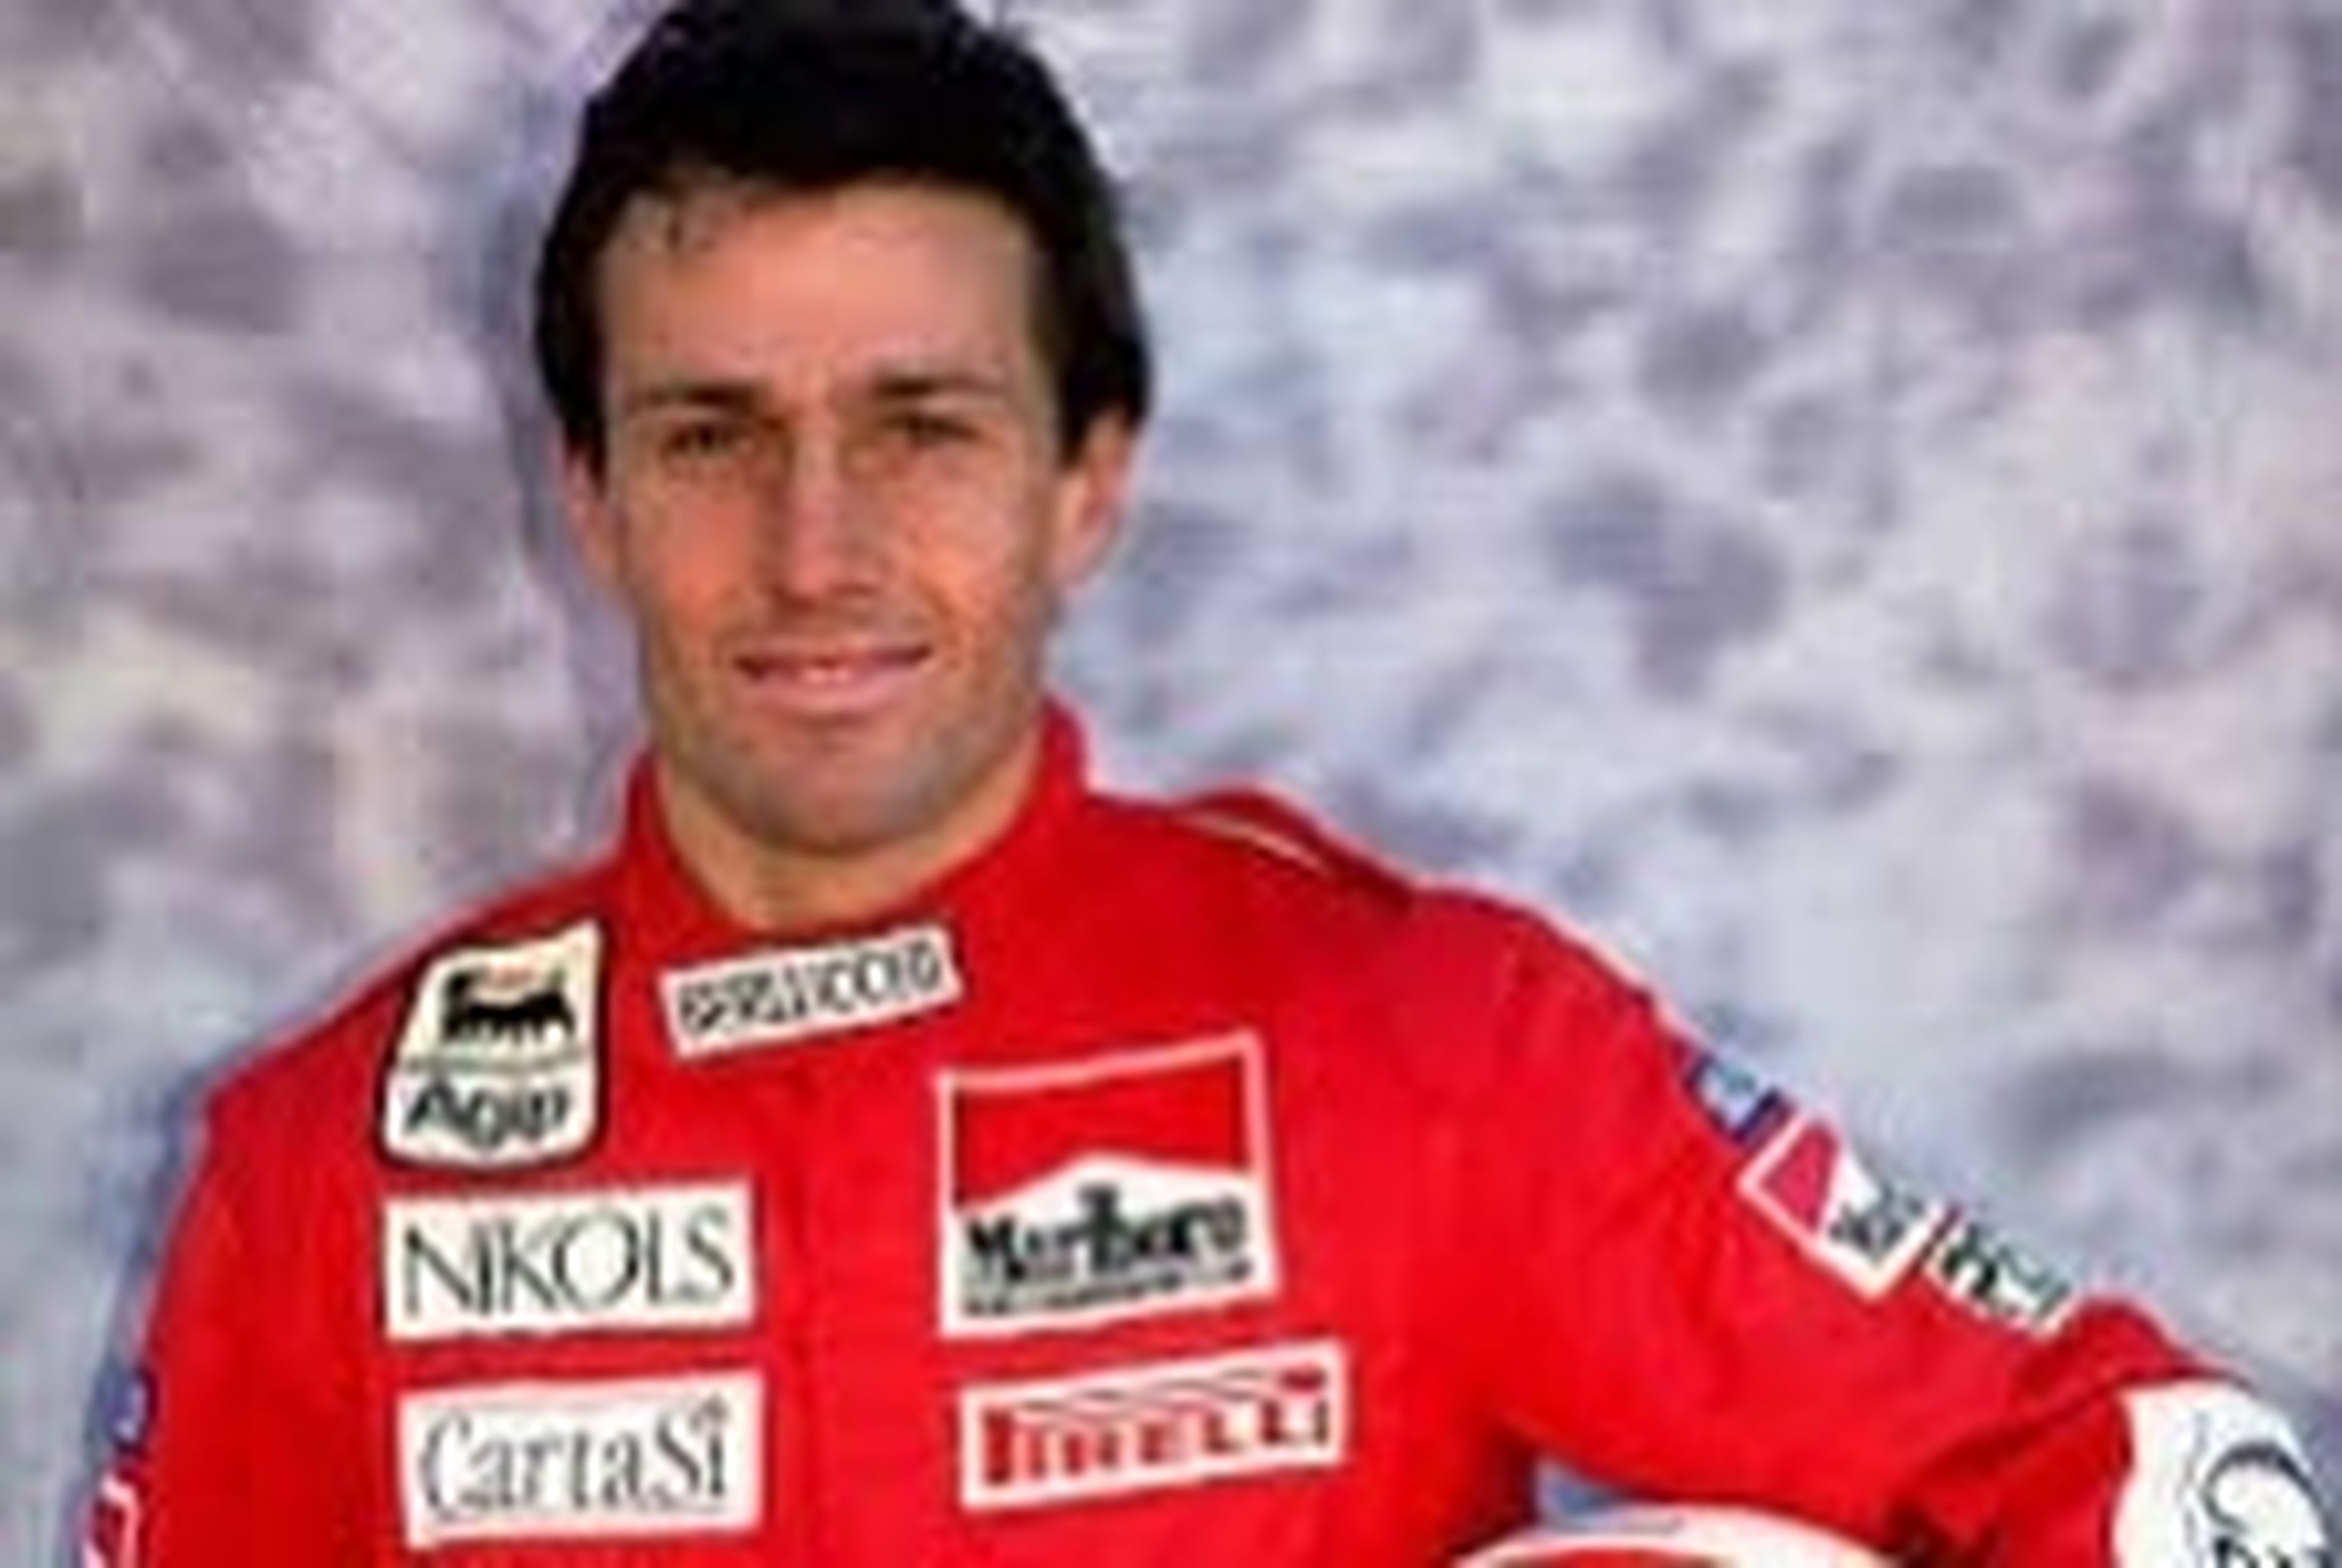 El piloto de F1 Andrea de Cesaris en un accidente de moto